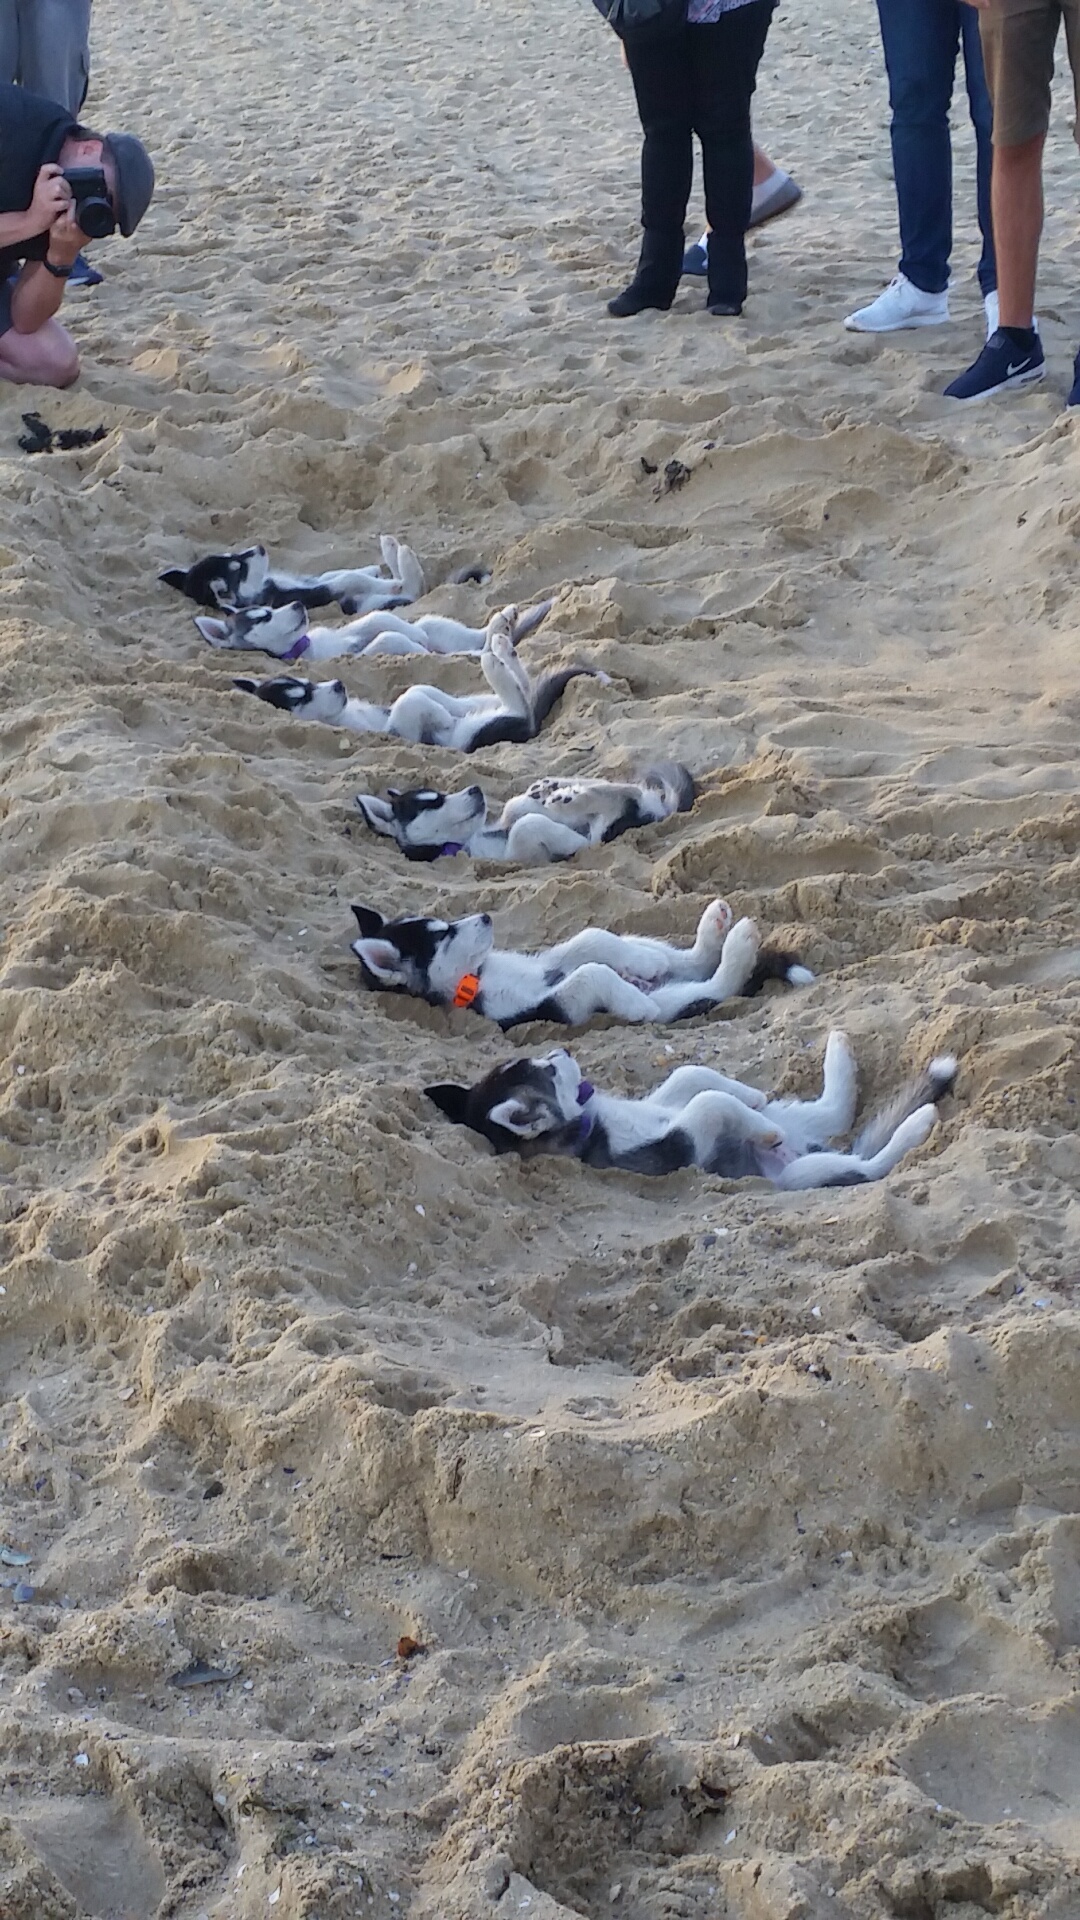 huskies lie on sand